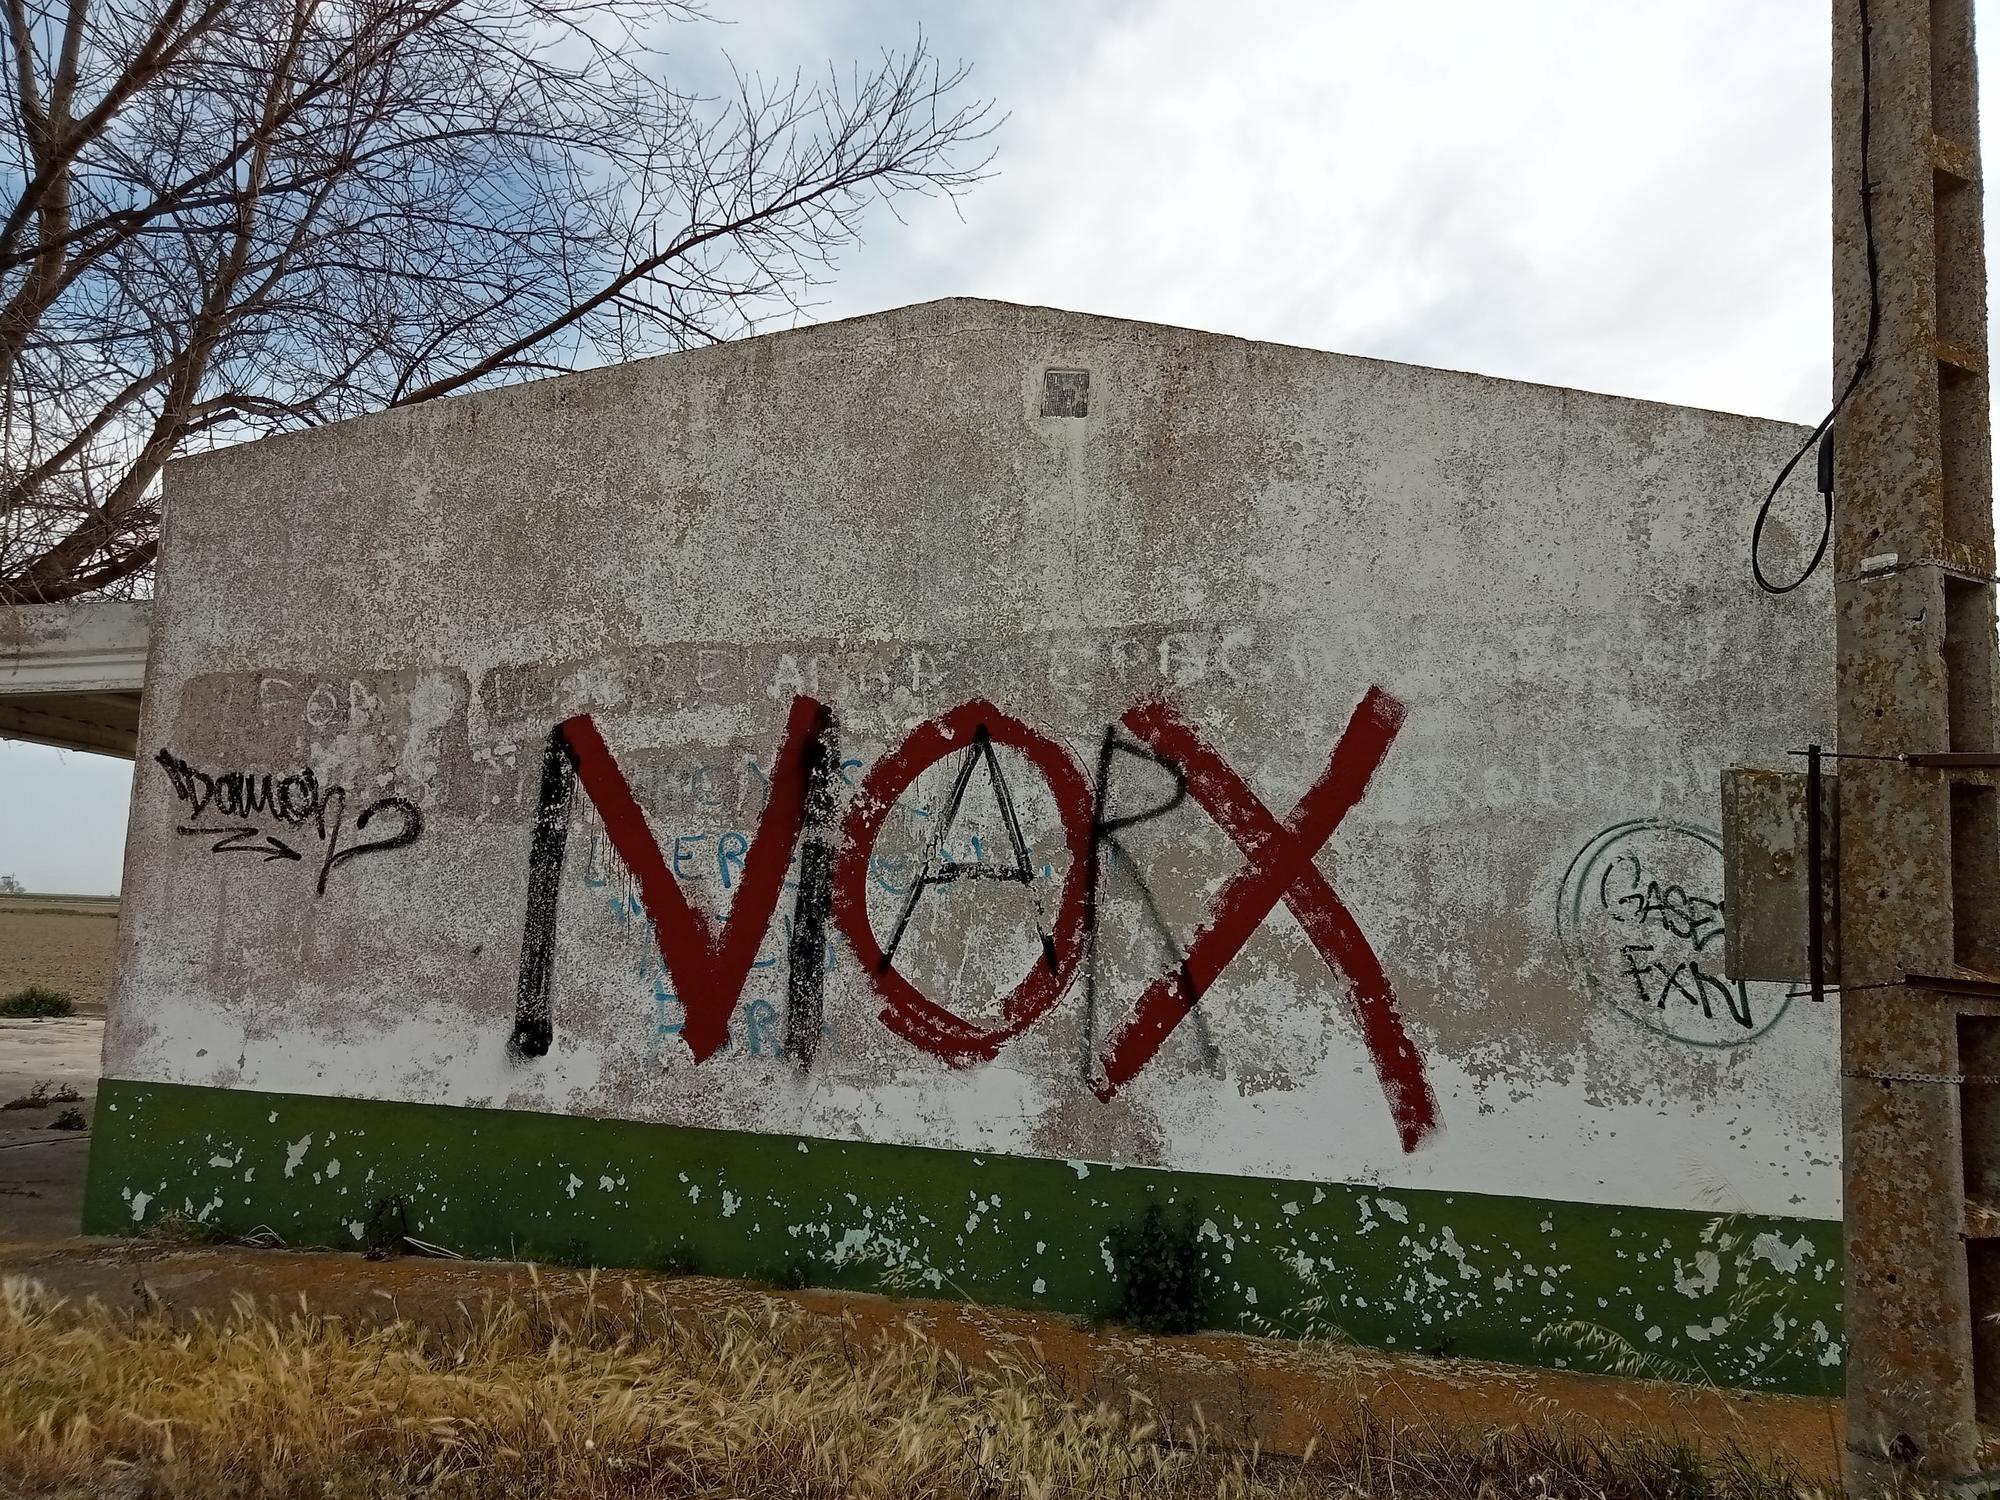 Vox-Marx